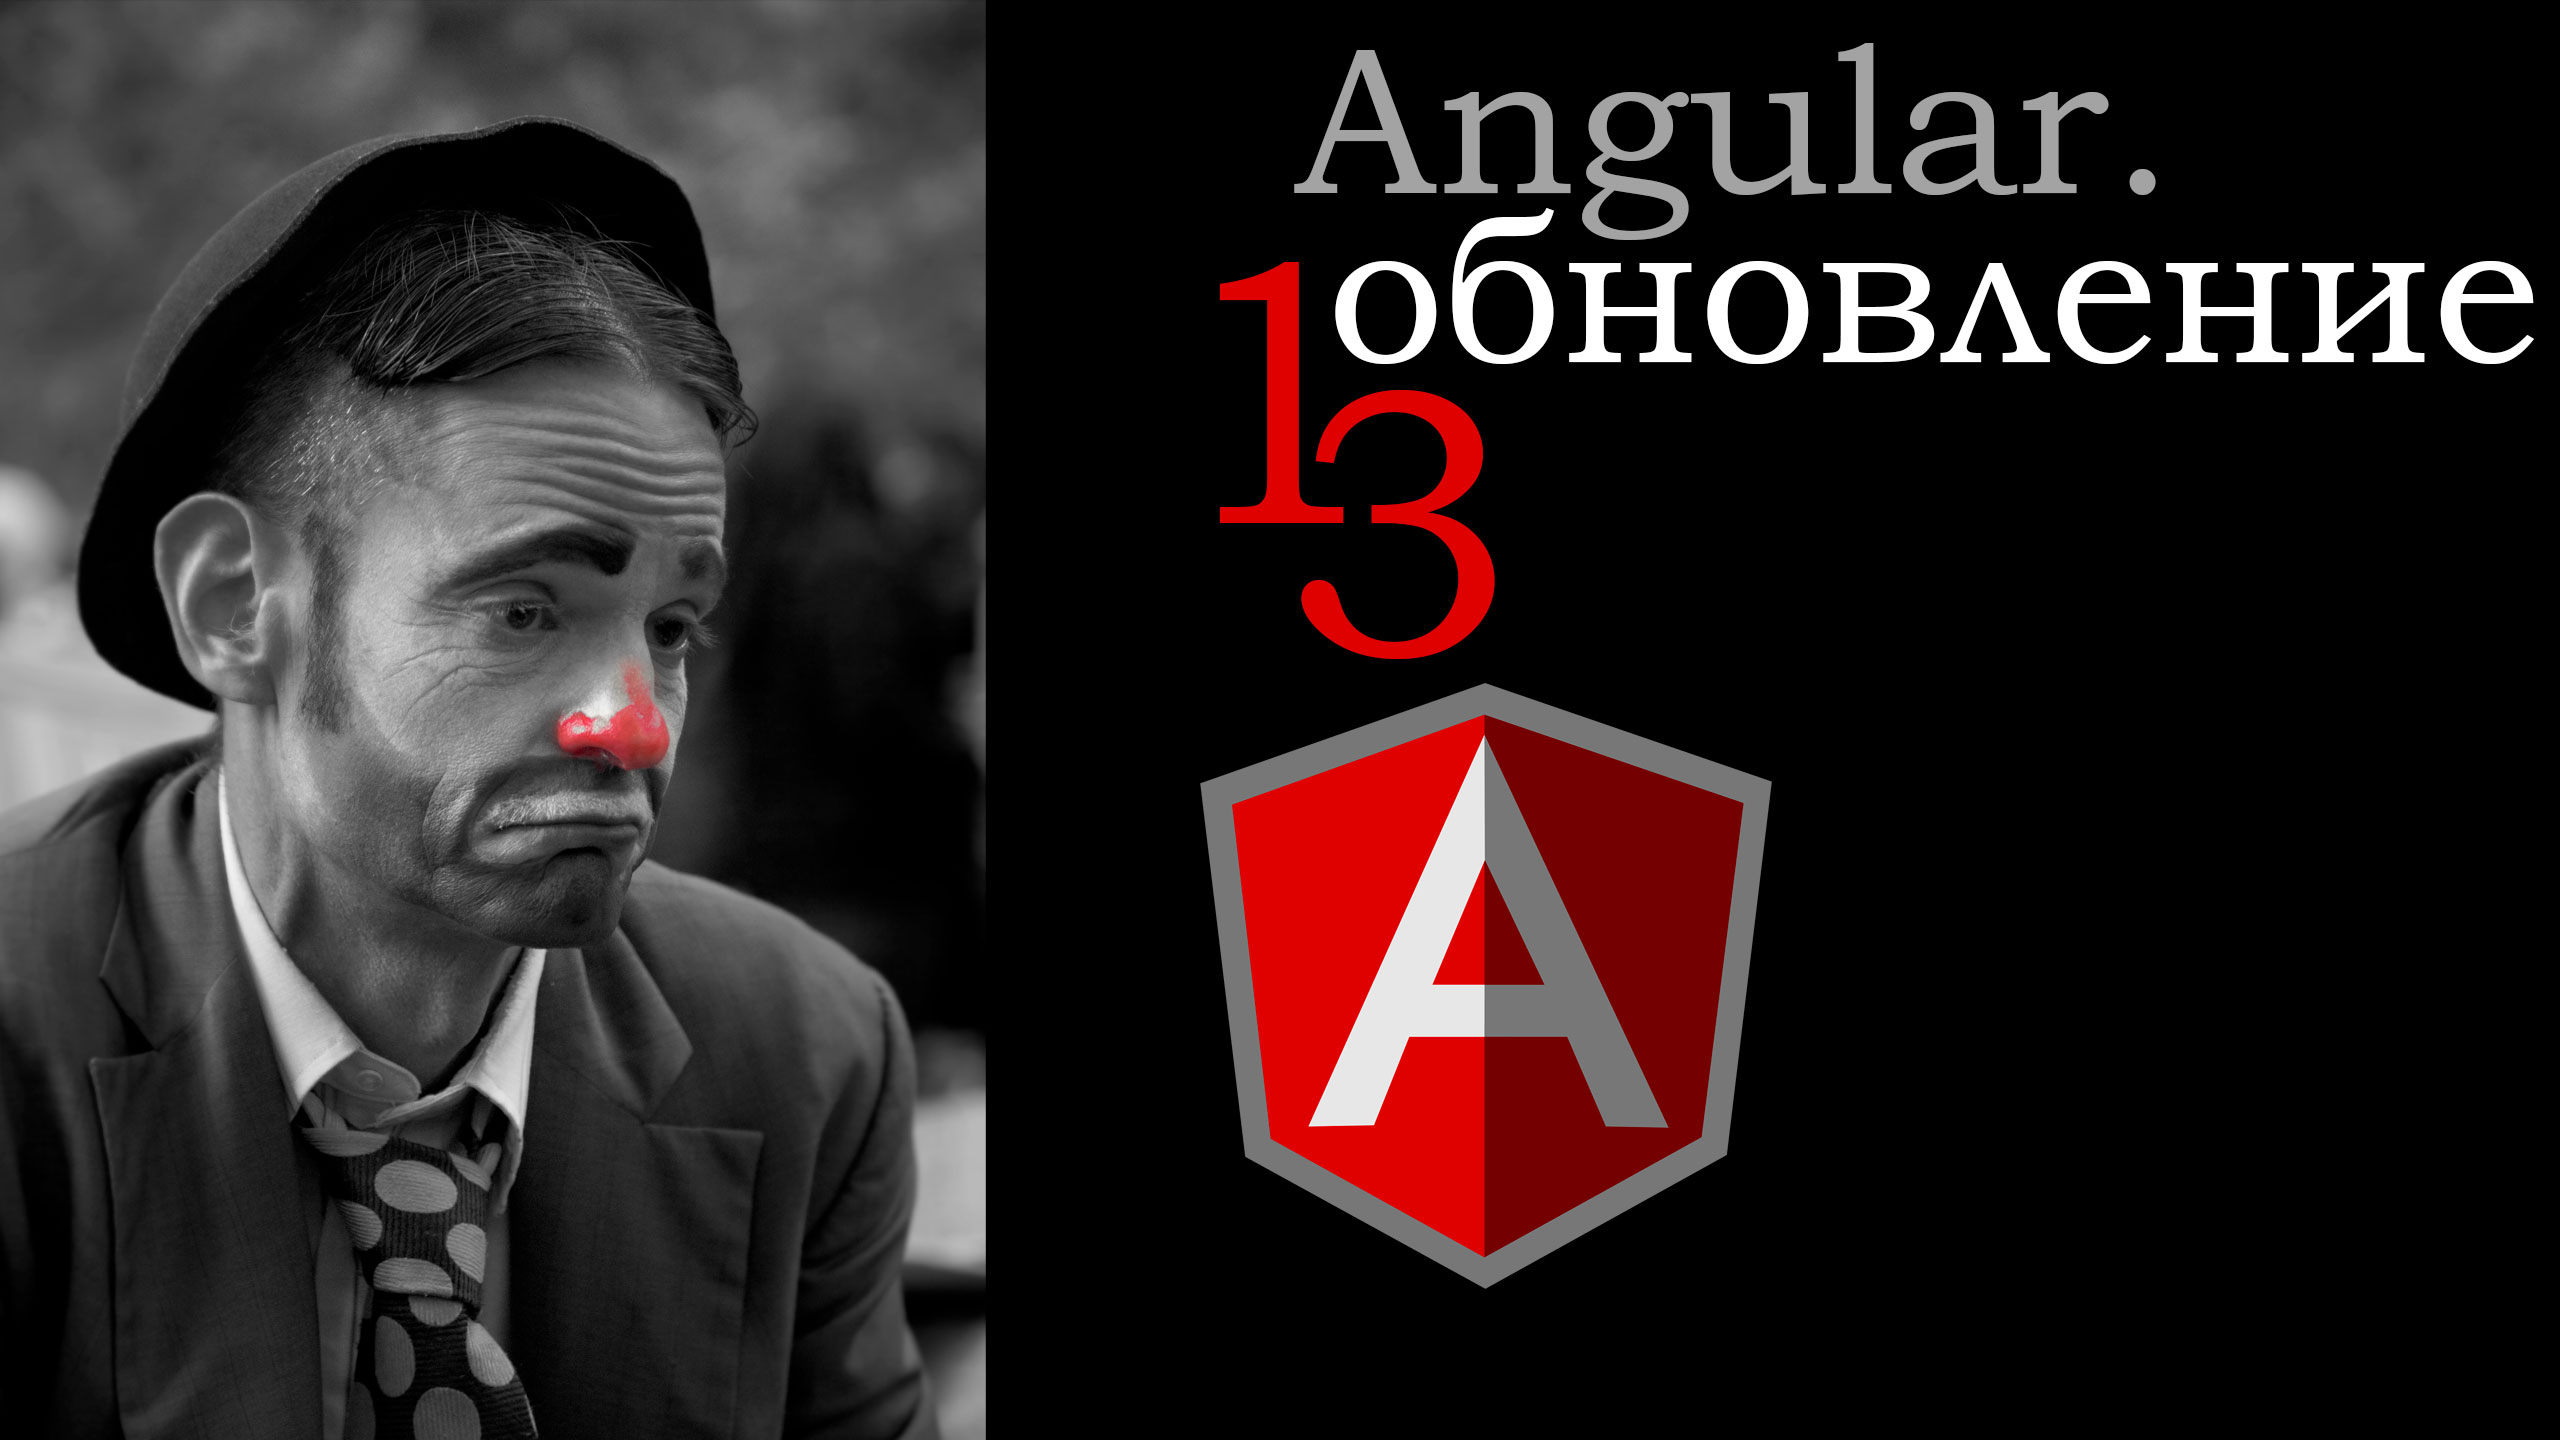 Angular. Update 13